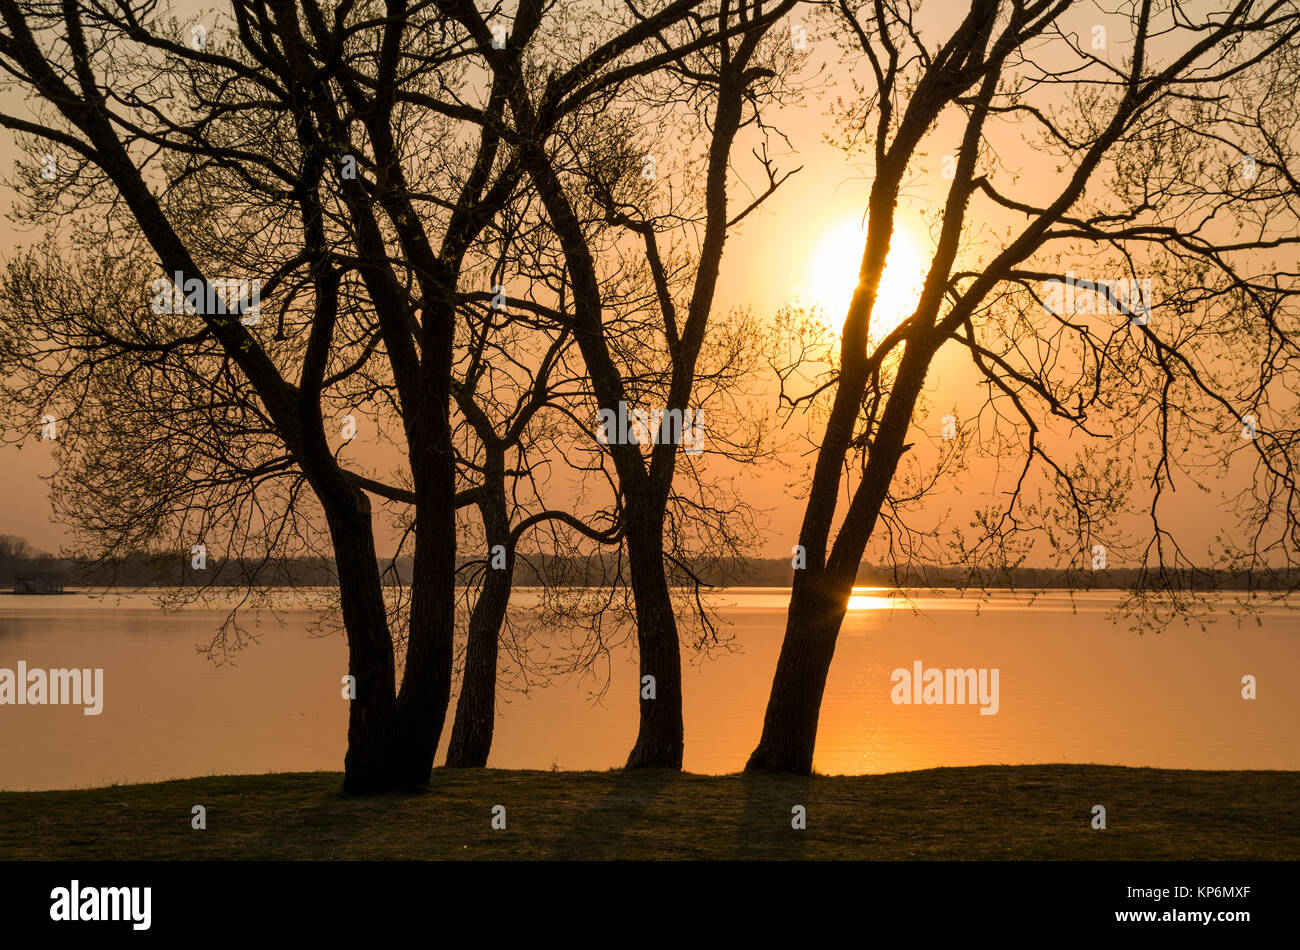 Quelques silhouettes d'arbres magnifiques contre un paramètre white sun sur une rive du fleuve avec voyant orange remplissant tout. Banque D'Images